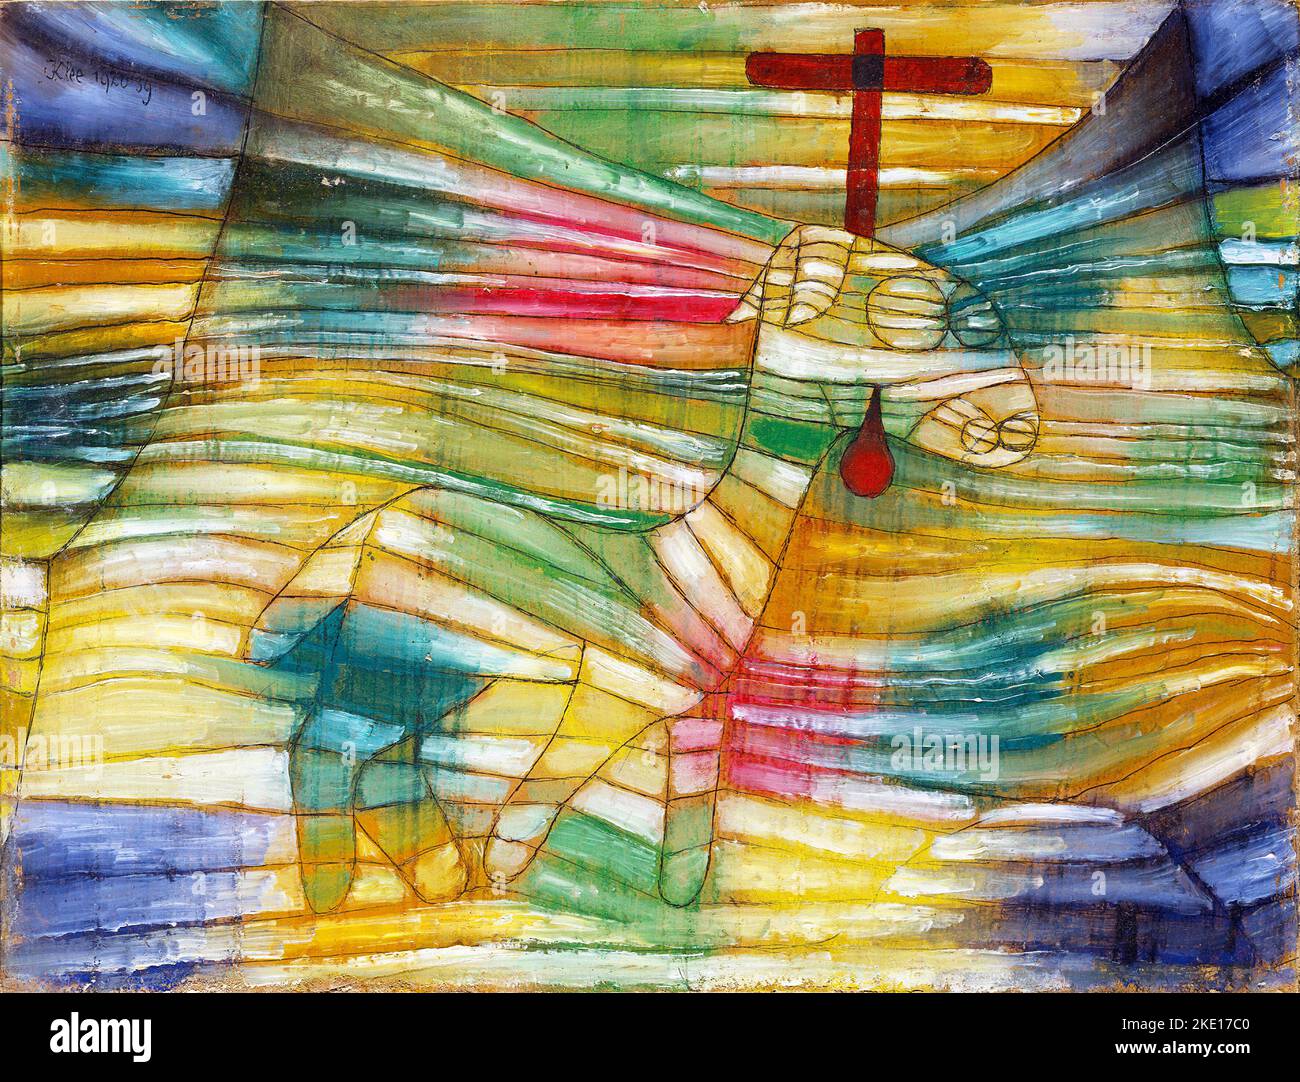 Das Lamm von Paul Klee (1879-1940), Öl- und Tintenzeichnung auf Karton, 1920 Stockfoto